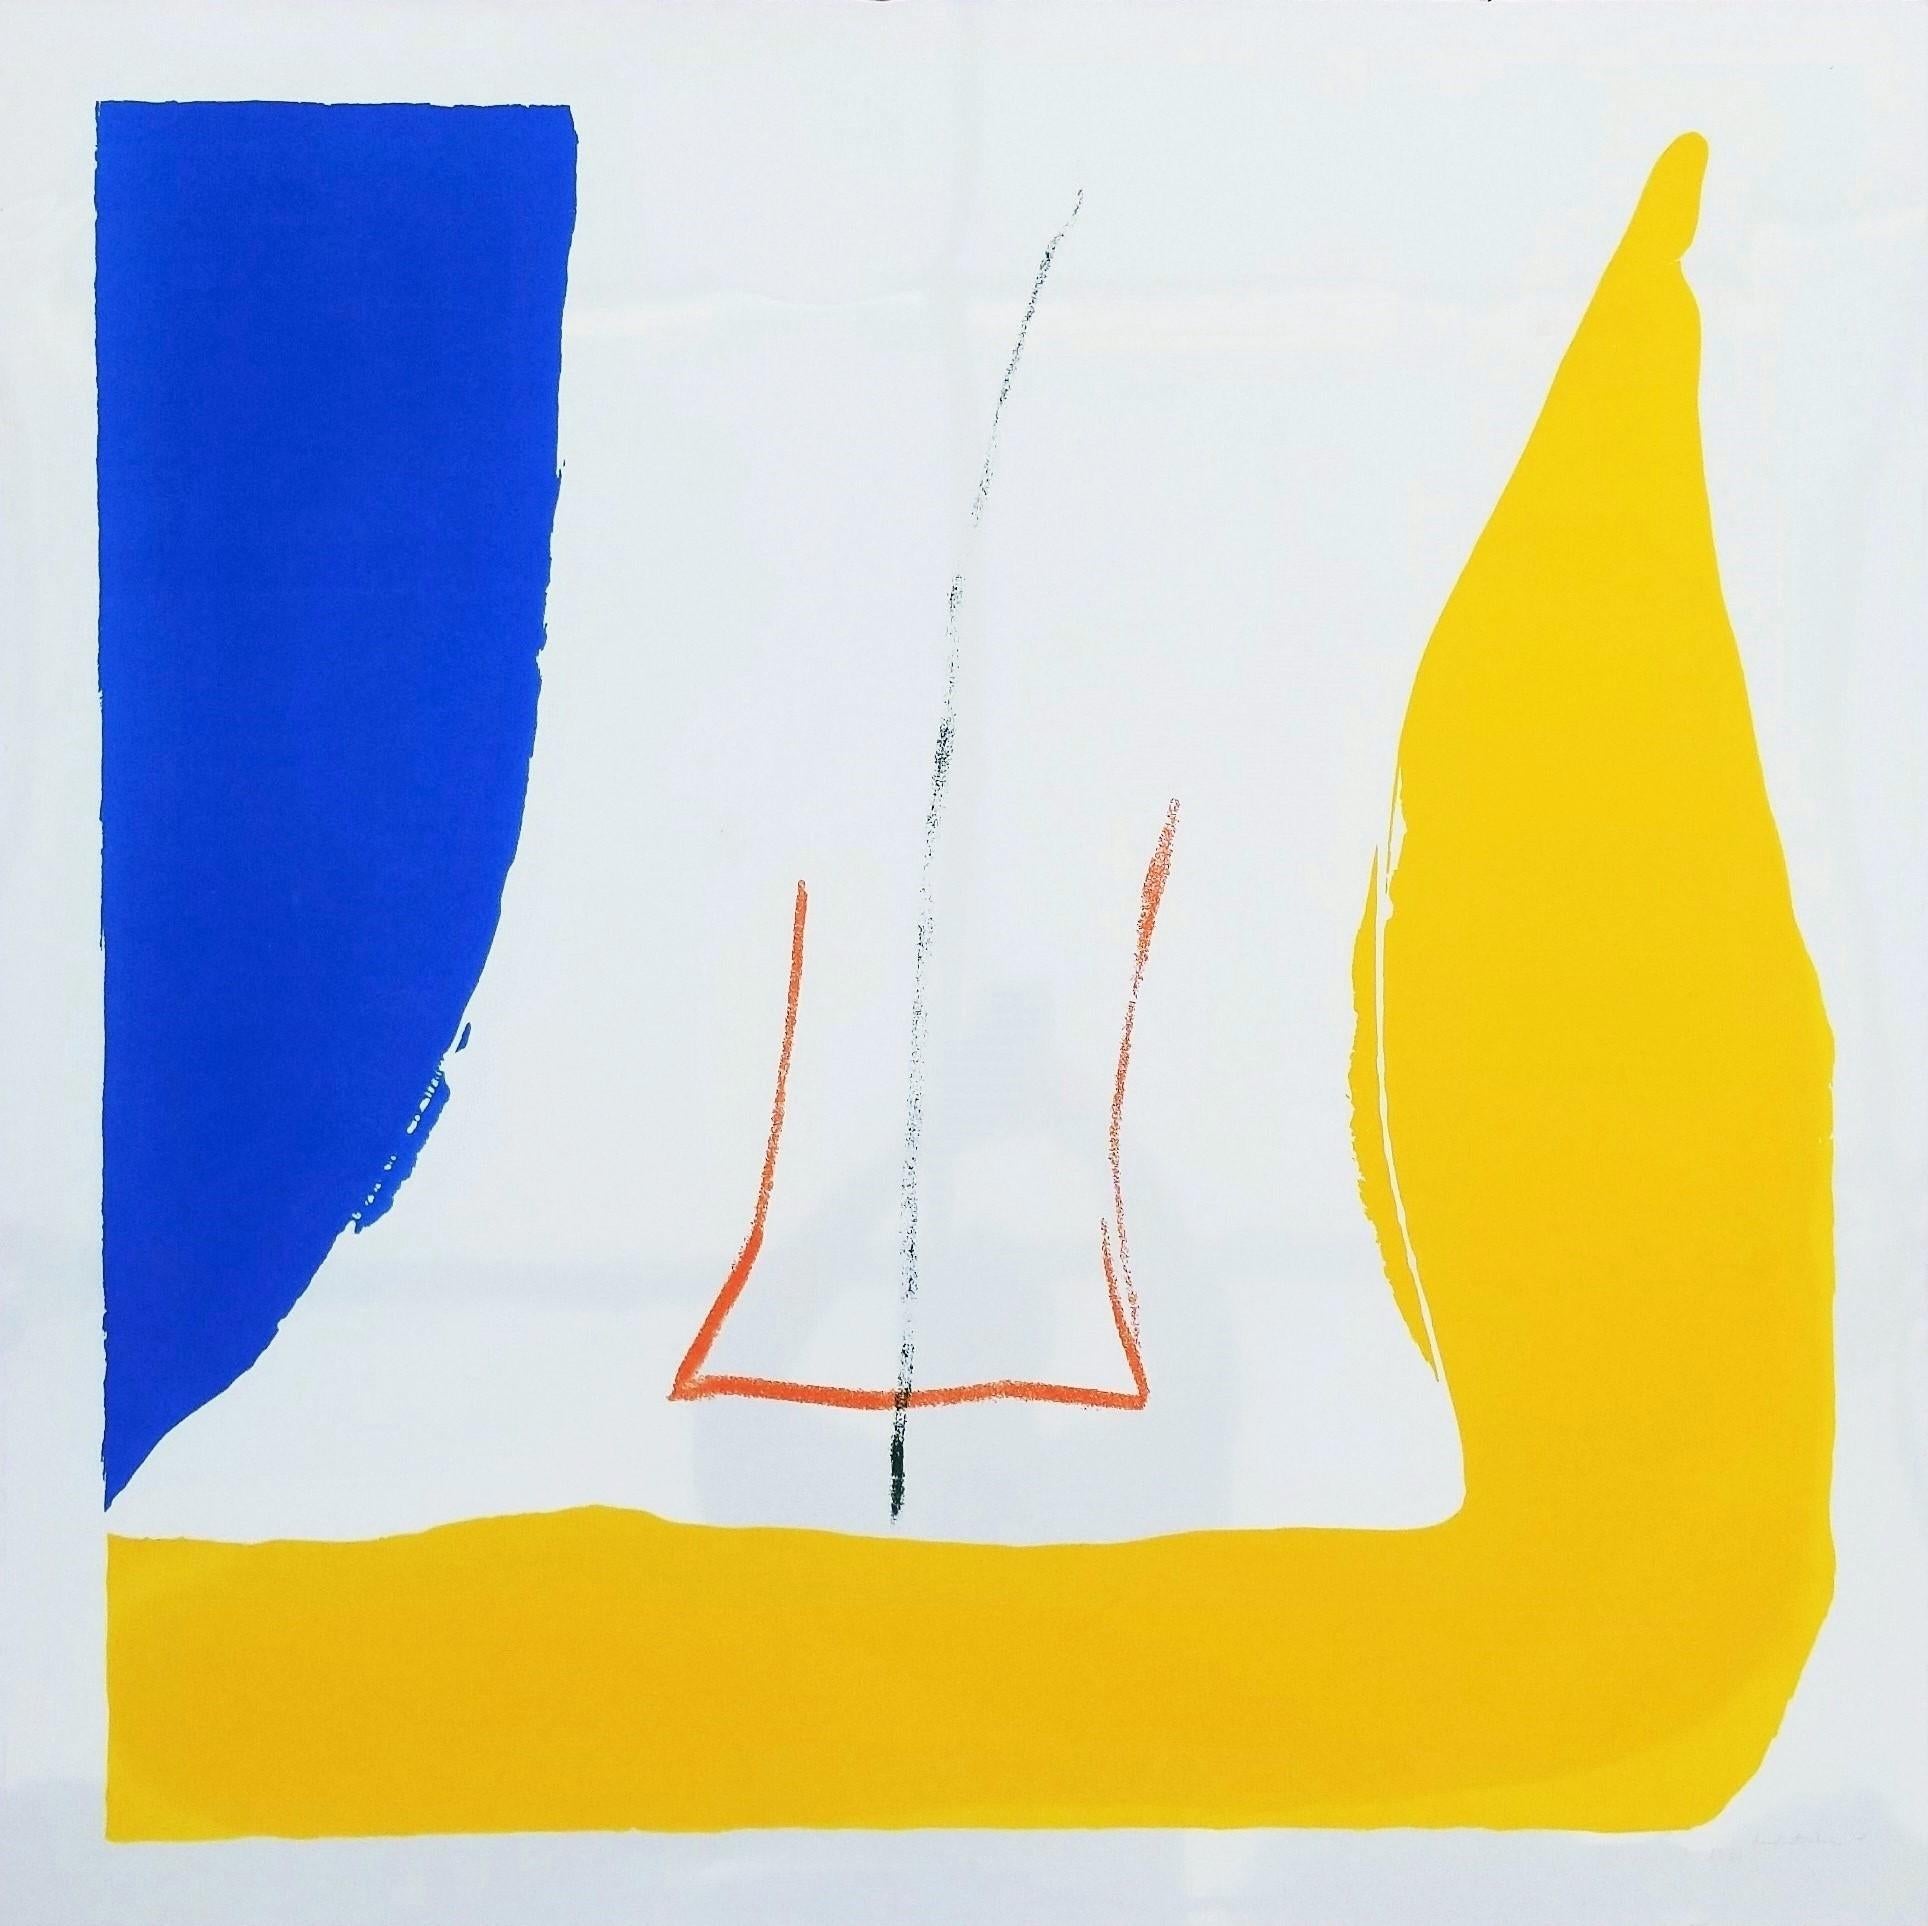 Artistics : Helen Frankenthaler (américaine, 1928-2011)
Titre : "Sun Corner" (Le coin du soleil)
Portfolio : La scène métropolitaine
*Signé, daté et numéroté par Frankenthaler (inscrit dans le métal) en bas à droite
Année : 1968
Support :